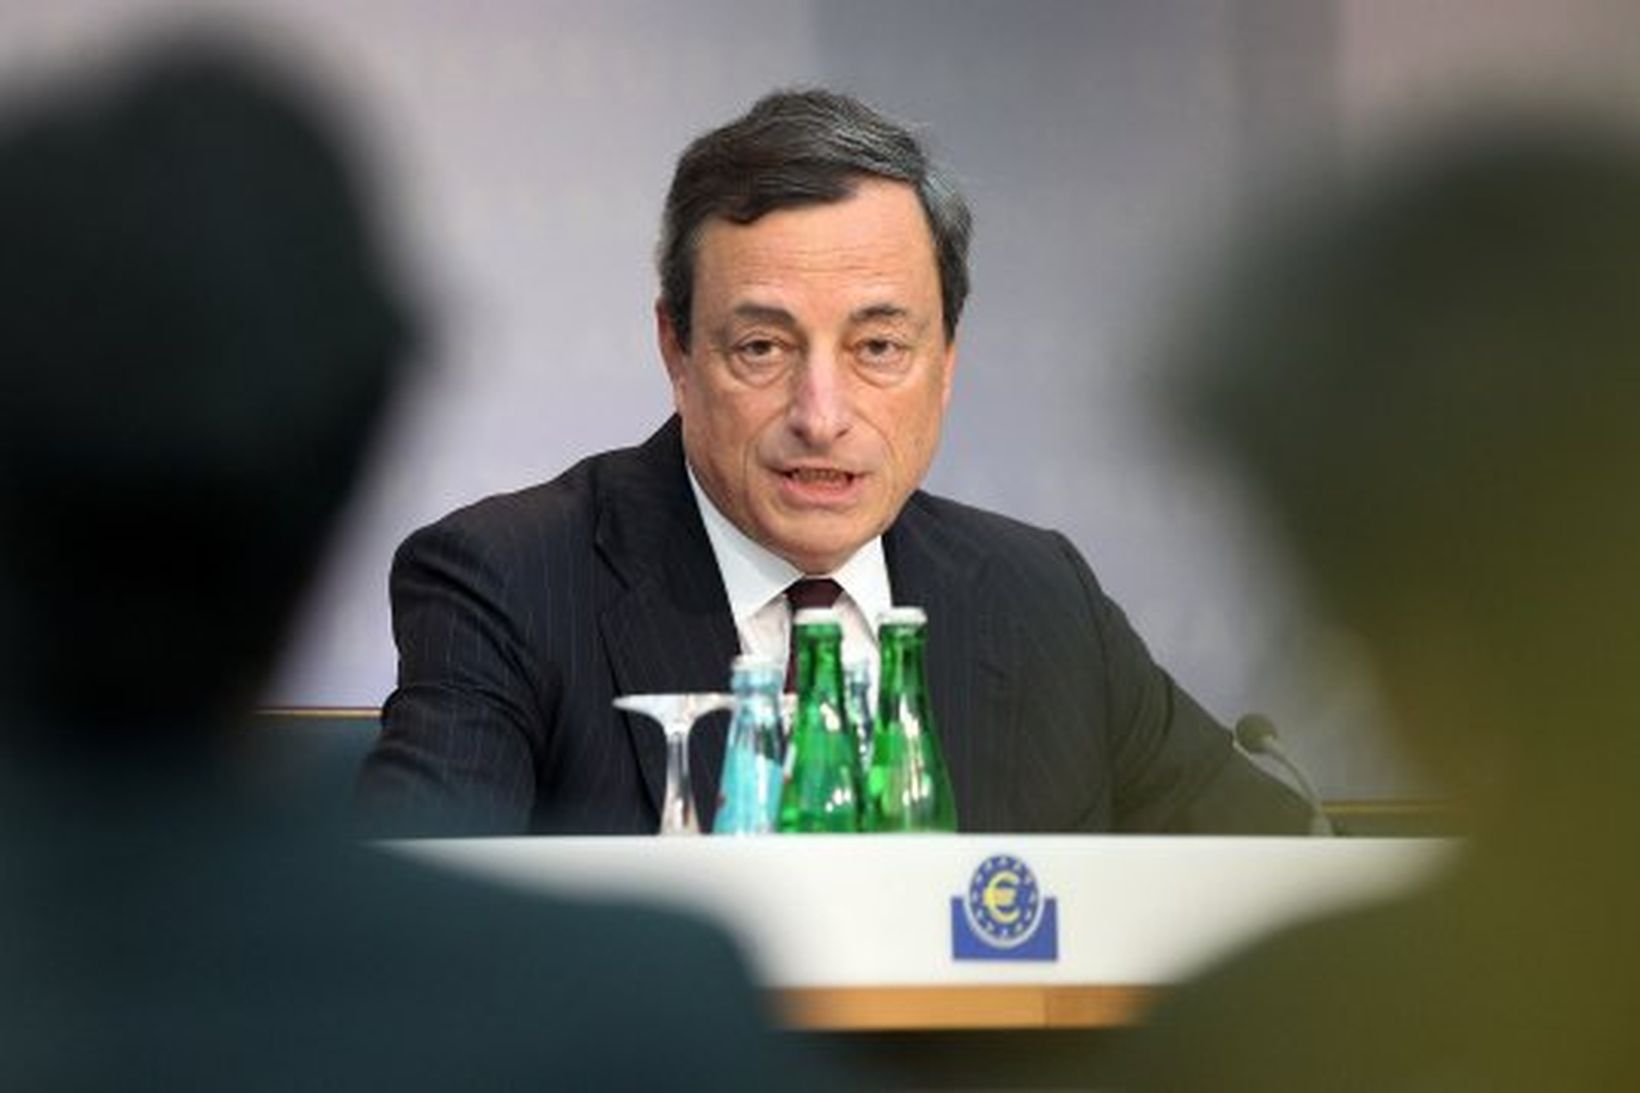 Mario Draghi, seðlabankastjóri Evrópu segir Portúgal vera í öruggum höndum.